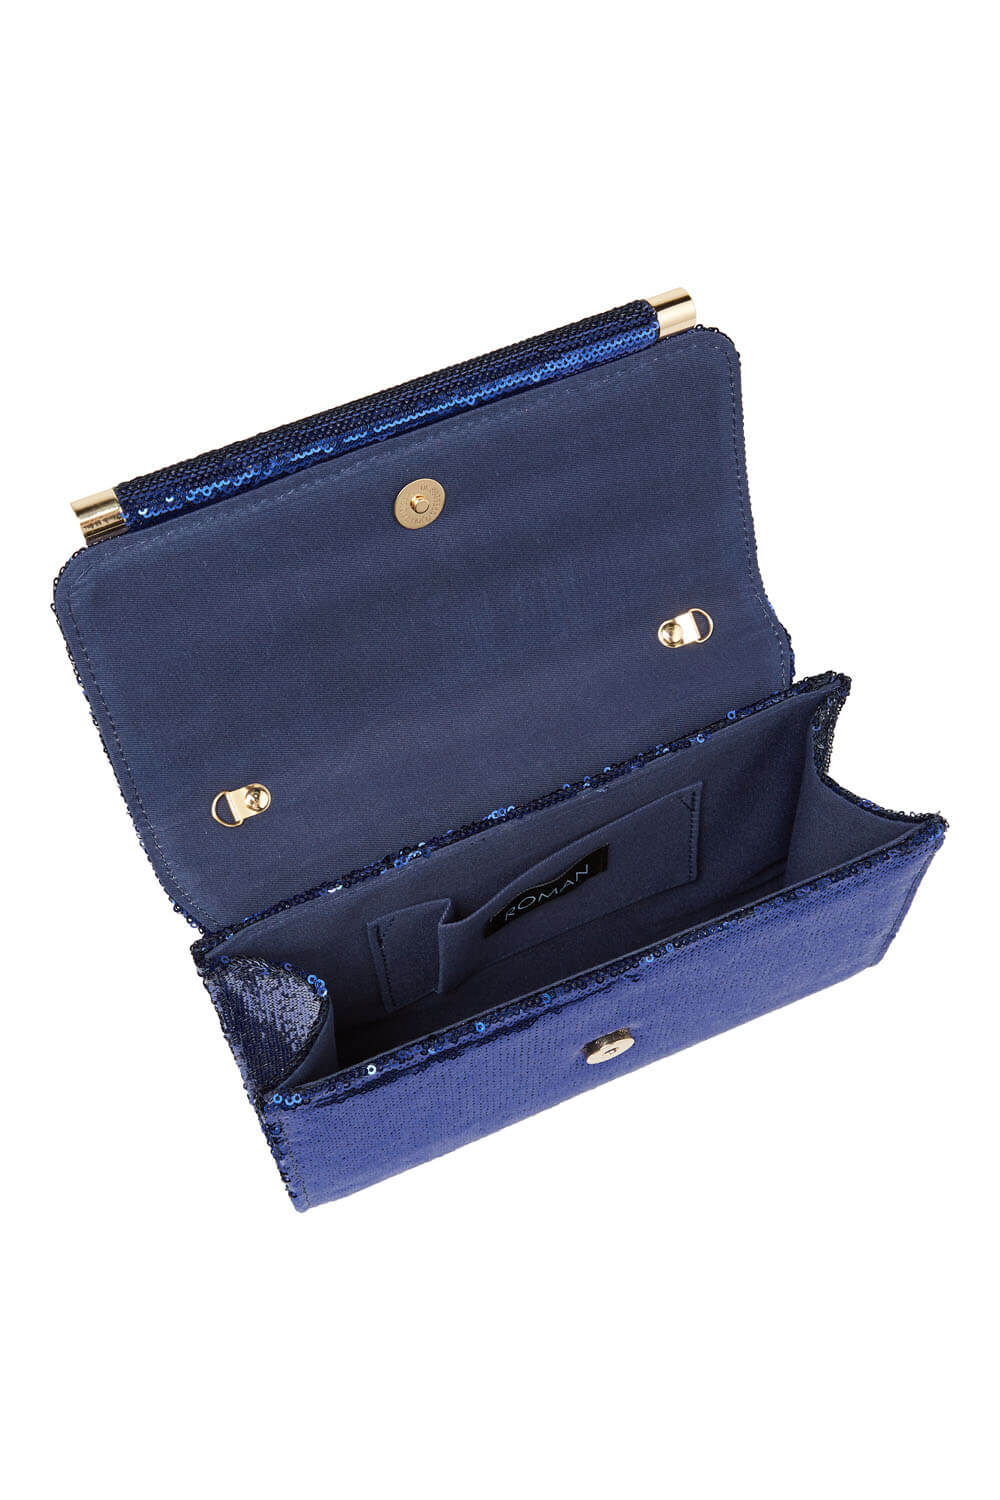 Blue Sequin Foldover Metal Bar Clutch Bag, Image 3 of 5